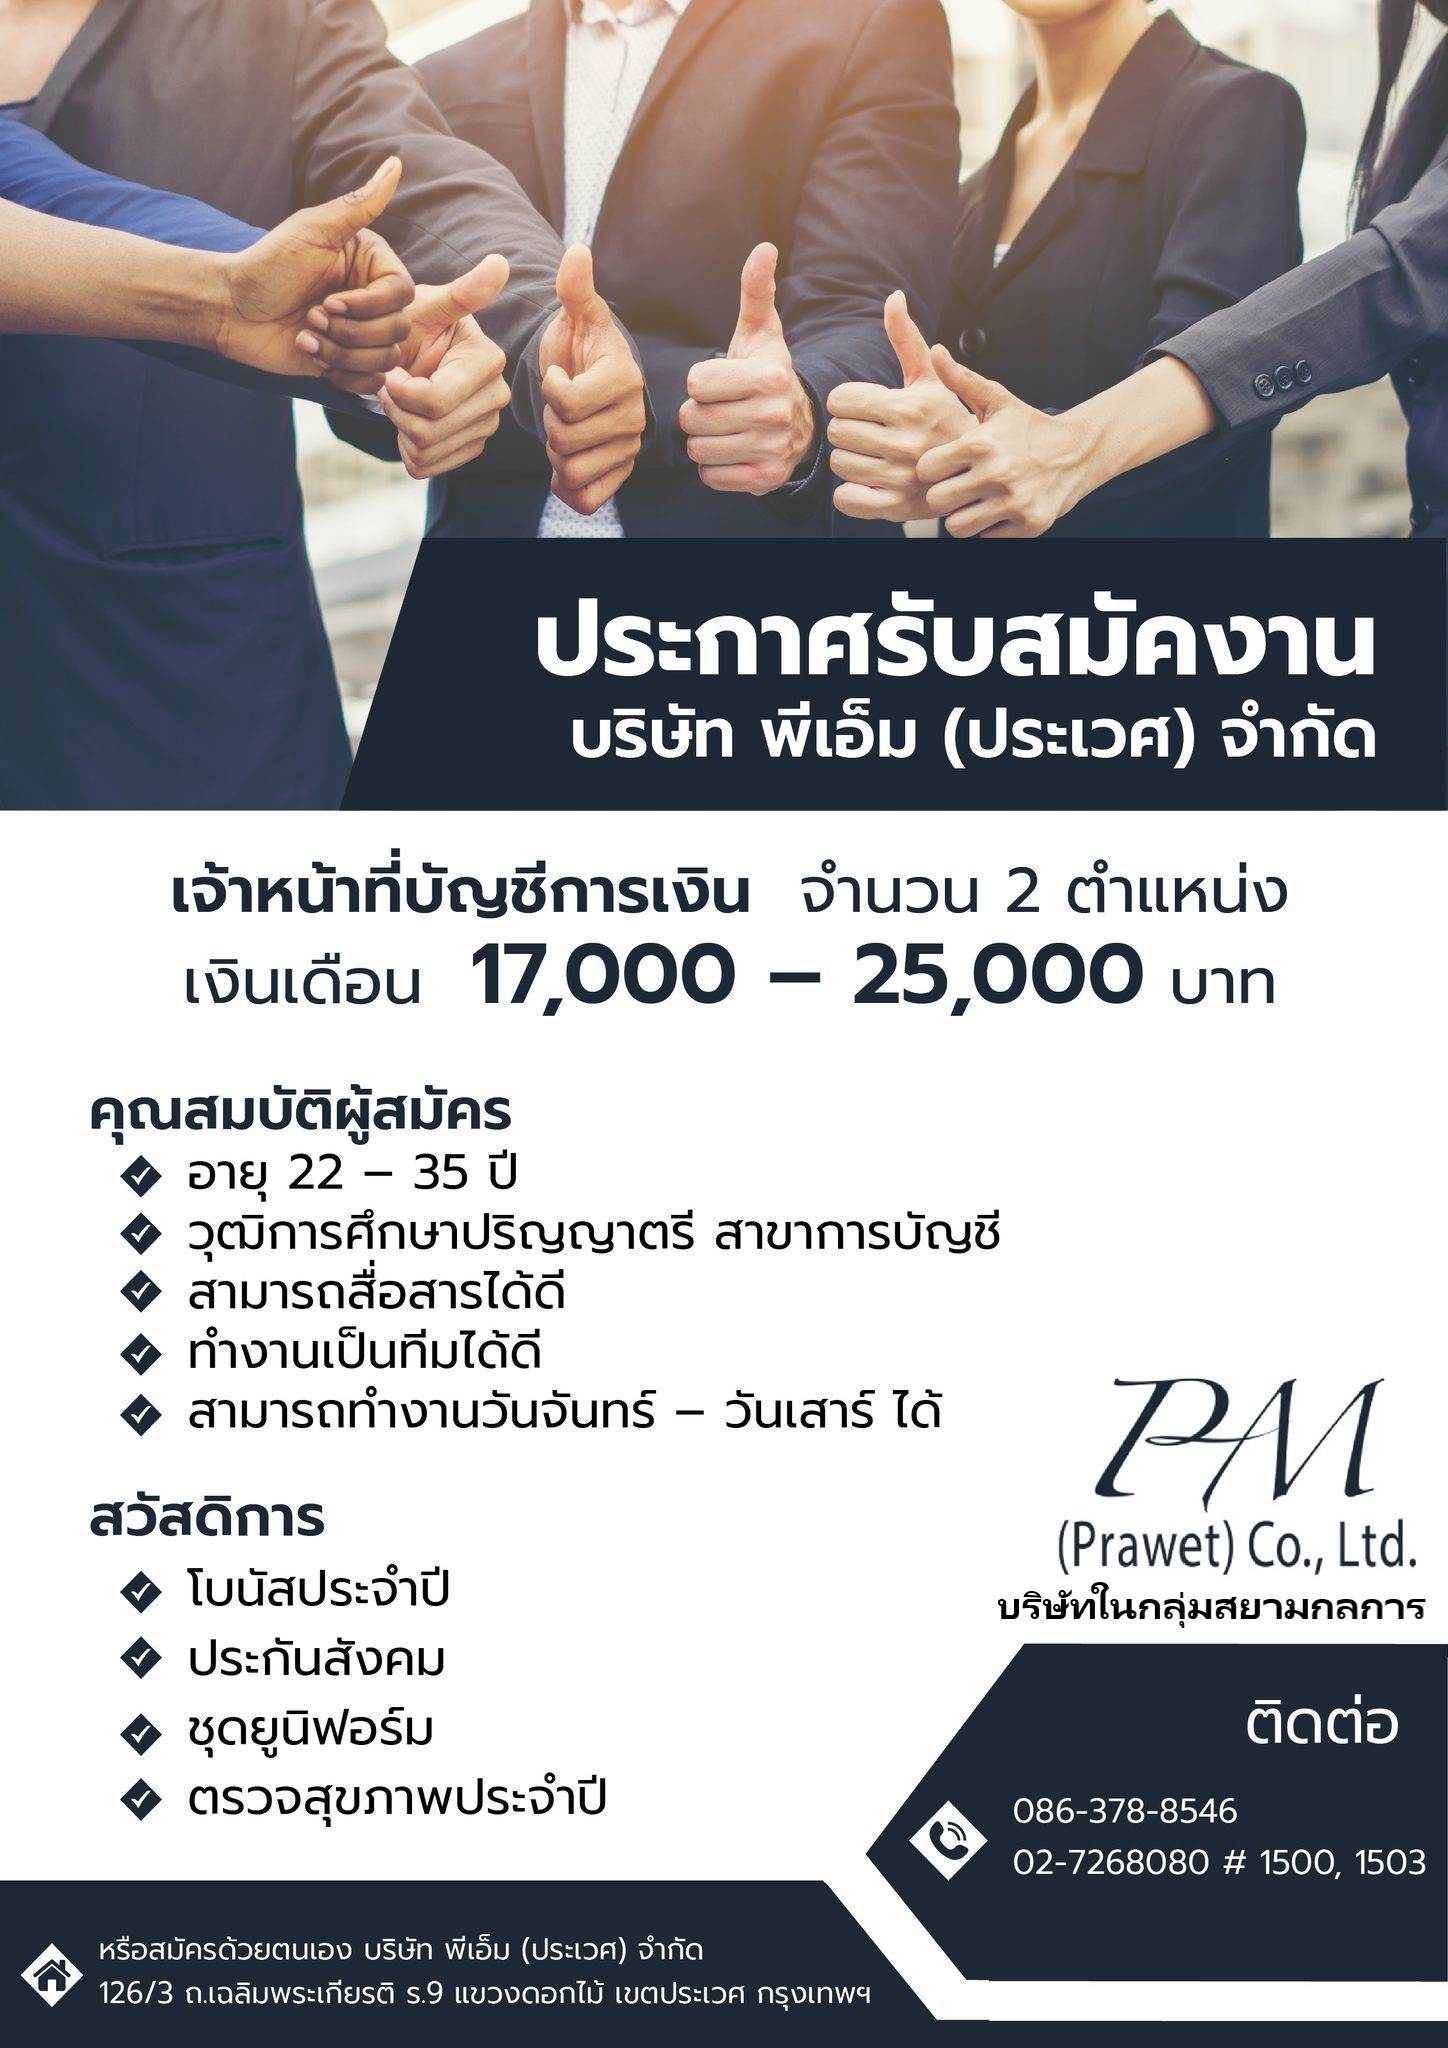 PM (Prawet) Co.,Ltd (บริษัทในกลุ่มสยามกลการ) รับสมัครพนักงาน